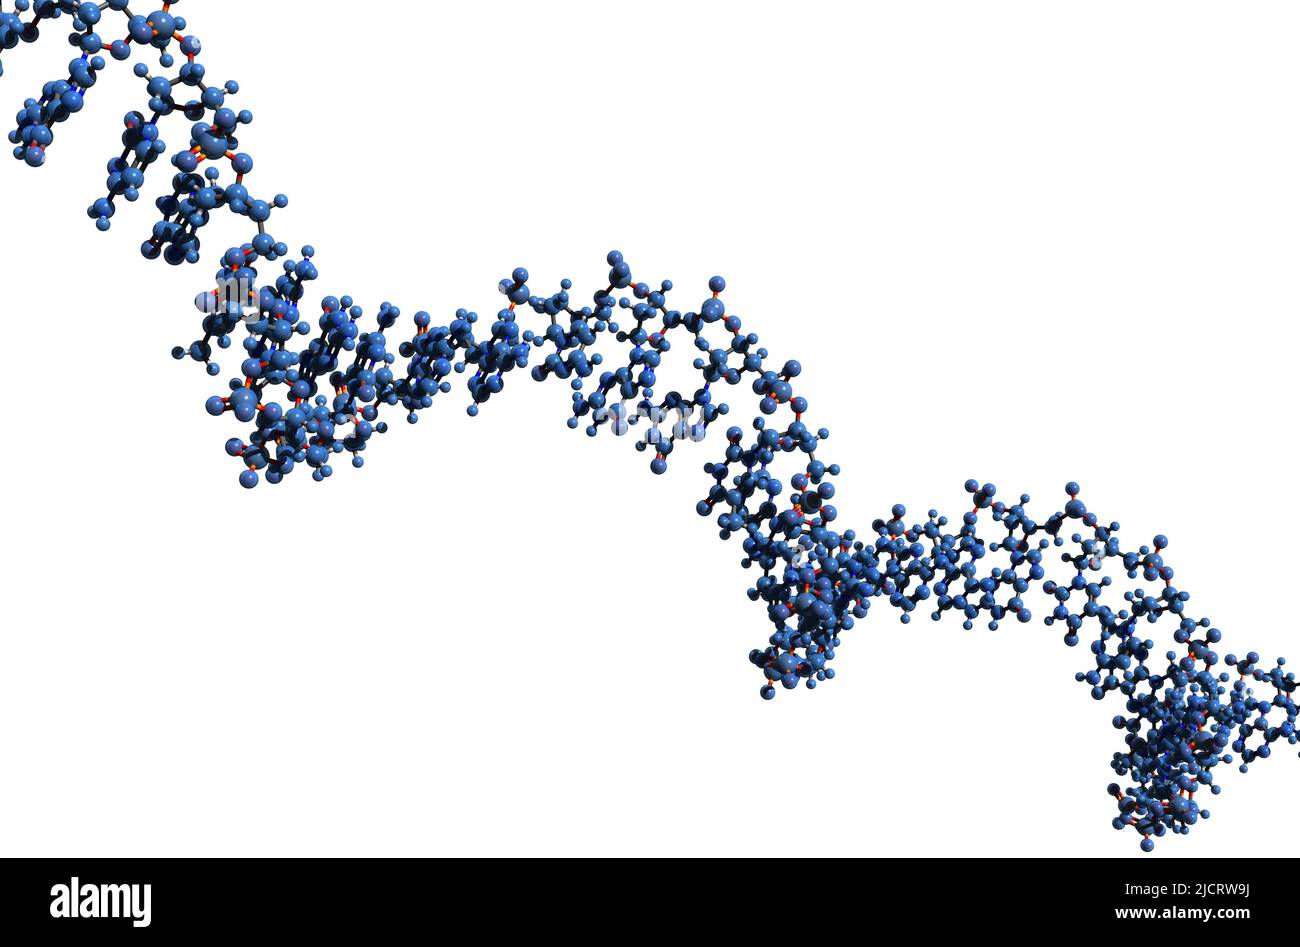 3D immagine di RNA macromolecola formula scheletrica - struttura chimica molecolare di acido ribonucleico a filamento singolo isolato su sfondo bianco, Foto Stock